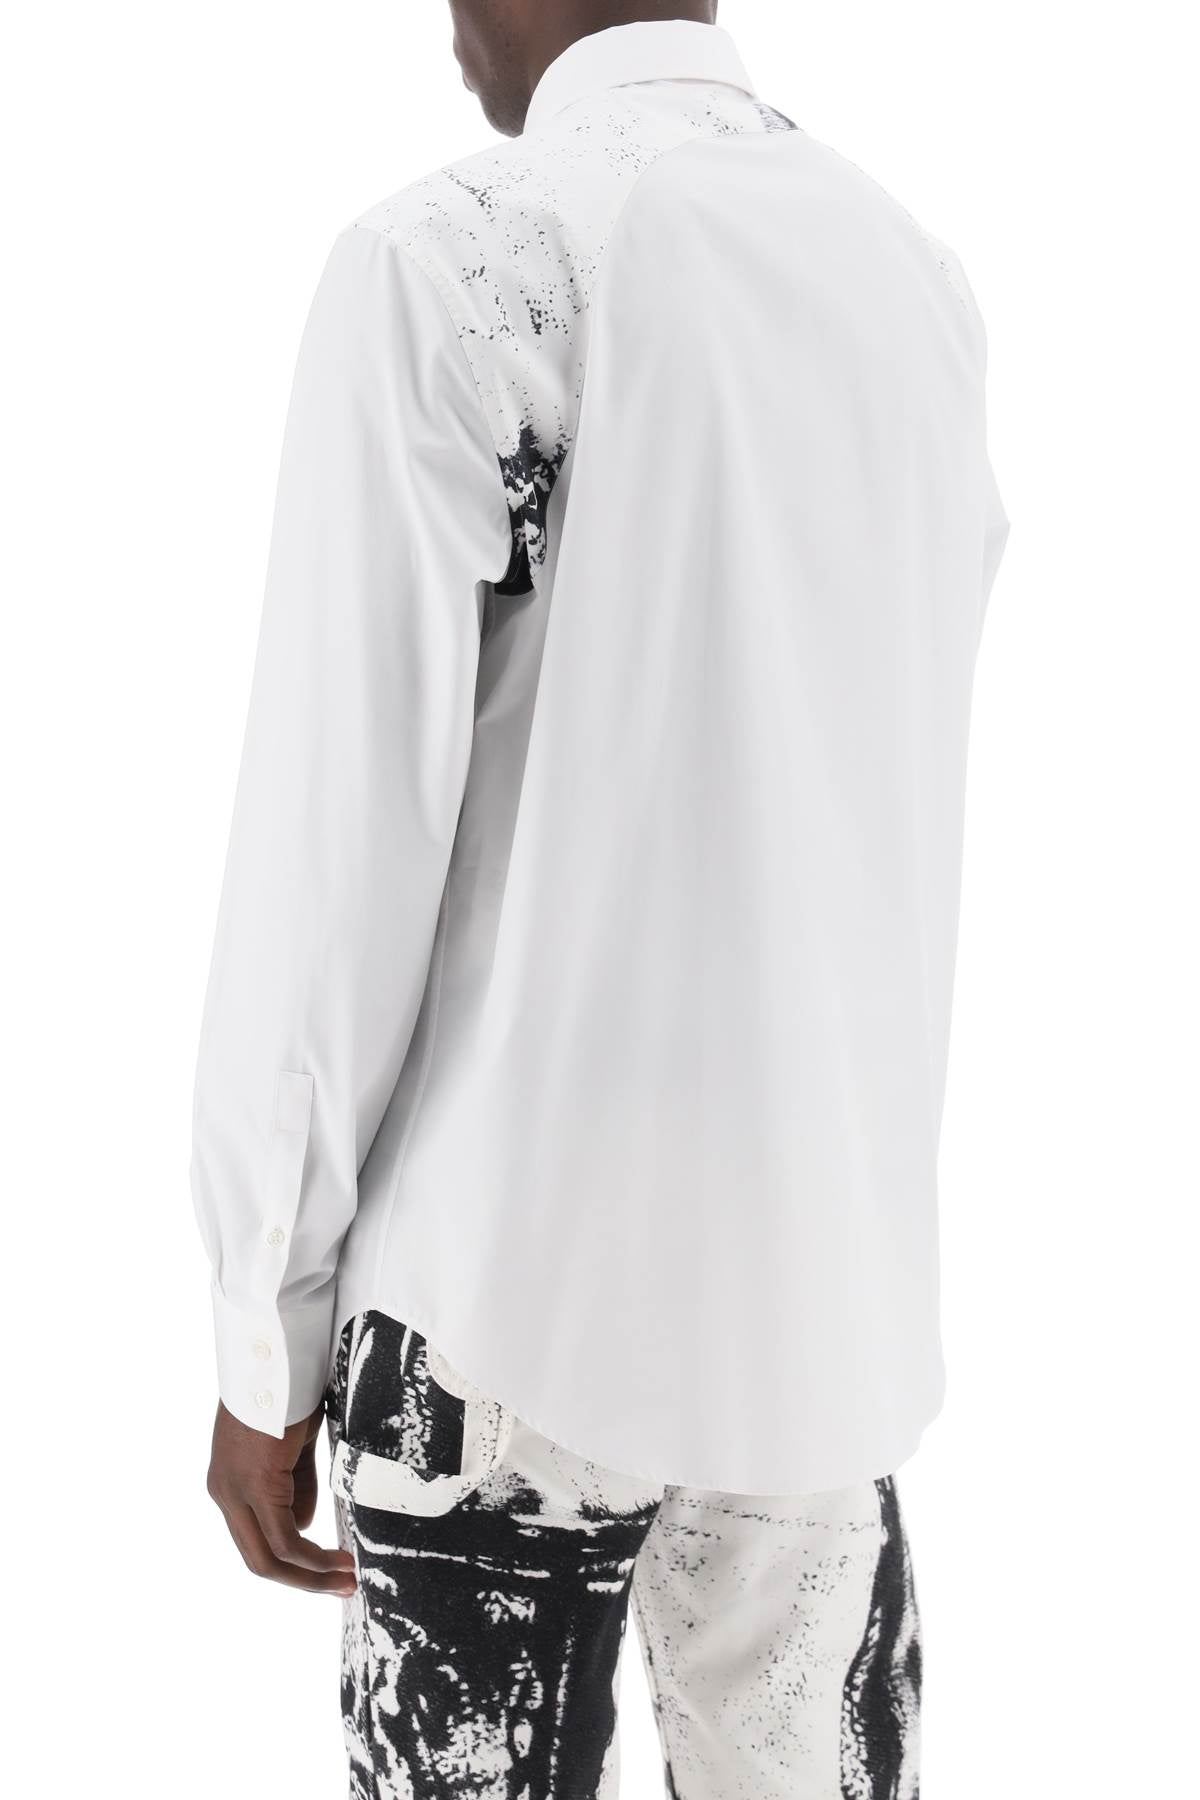 メンズプリントハーネスシャツ - オーガニックコットンポイントカラーのボタンアップ